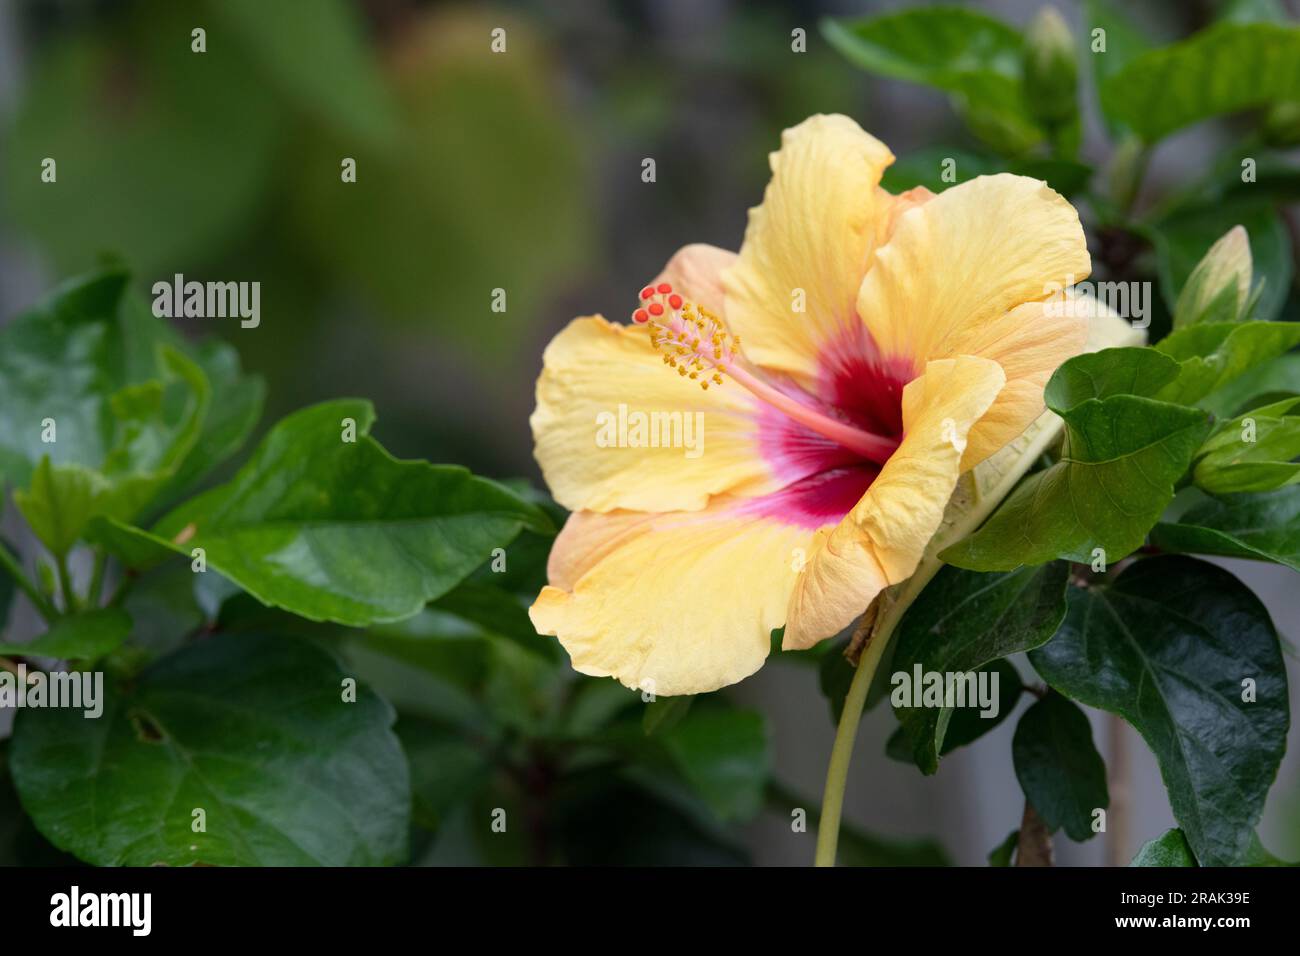 Hibiscus Rosa Sinensis. Hibiscus flower Stock Photo